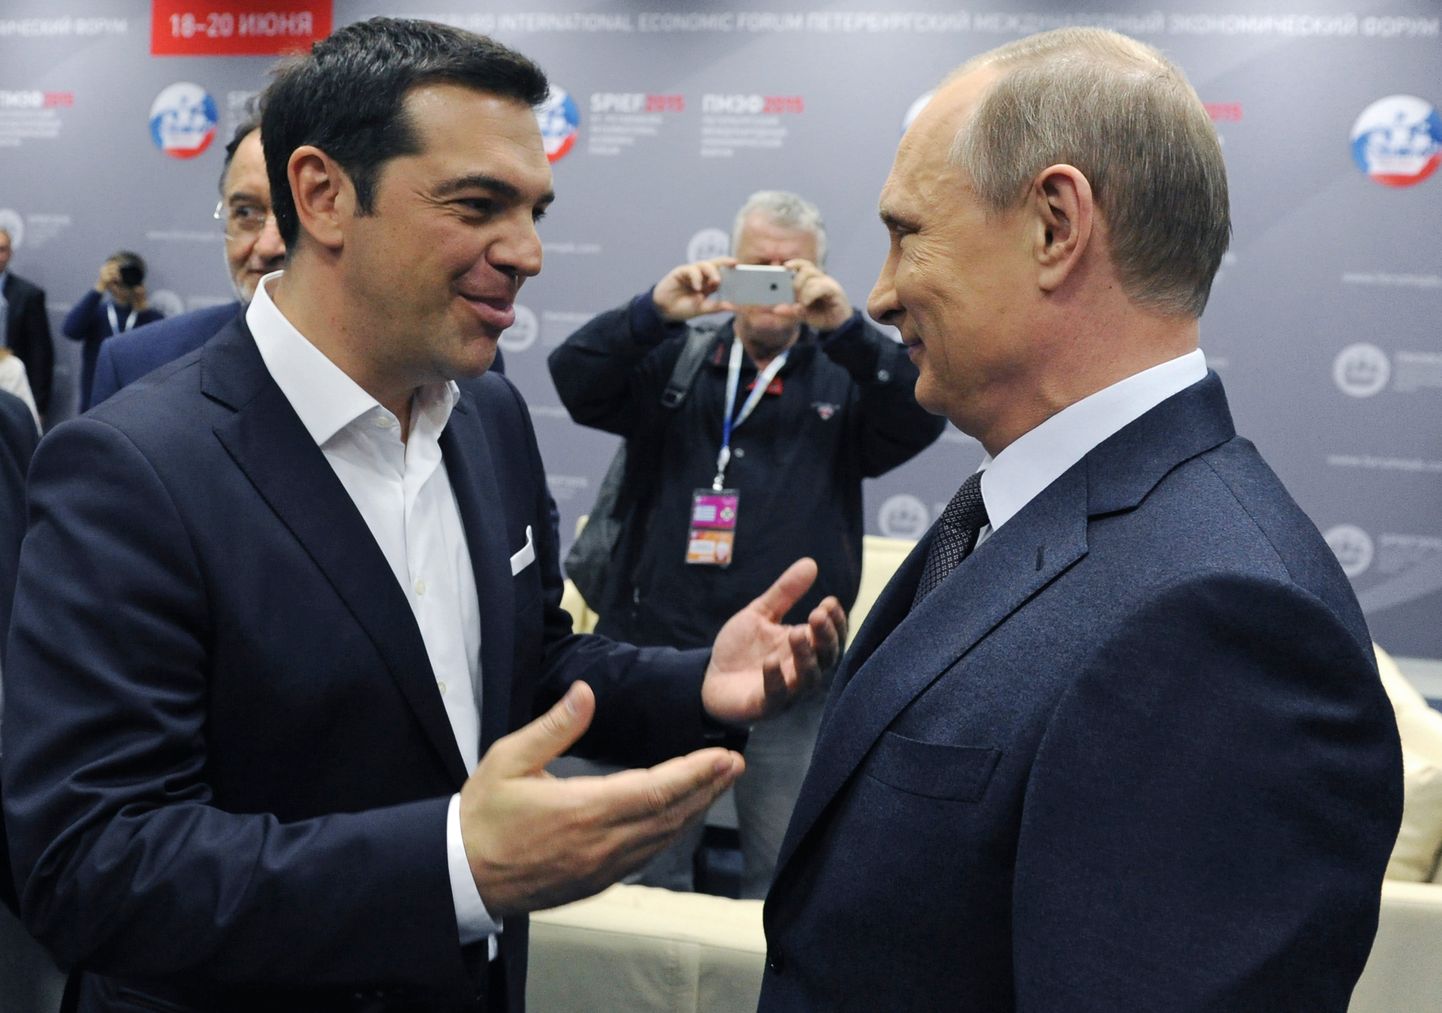 Kreeka peaminister Alexis Tsipras ja Venemaa president Vladimir Putin sõbralikus vestluses Peterburis peetud majandusfoorumil 2015. aasta juunis. Tollal olid kahe riigi suhted soojad, sest Kreeka valitsuses oli rohkelt russofiilsete vaadetega endisi kommuniste.